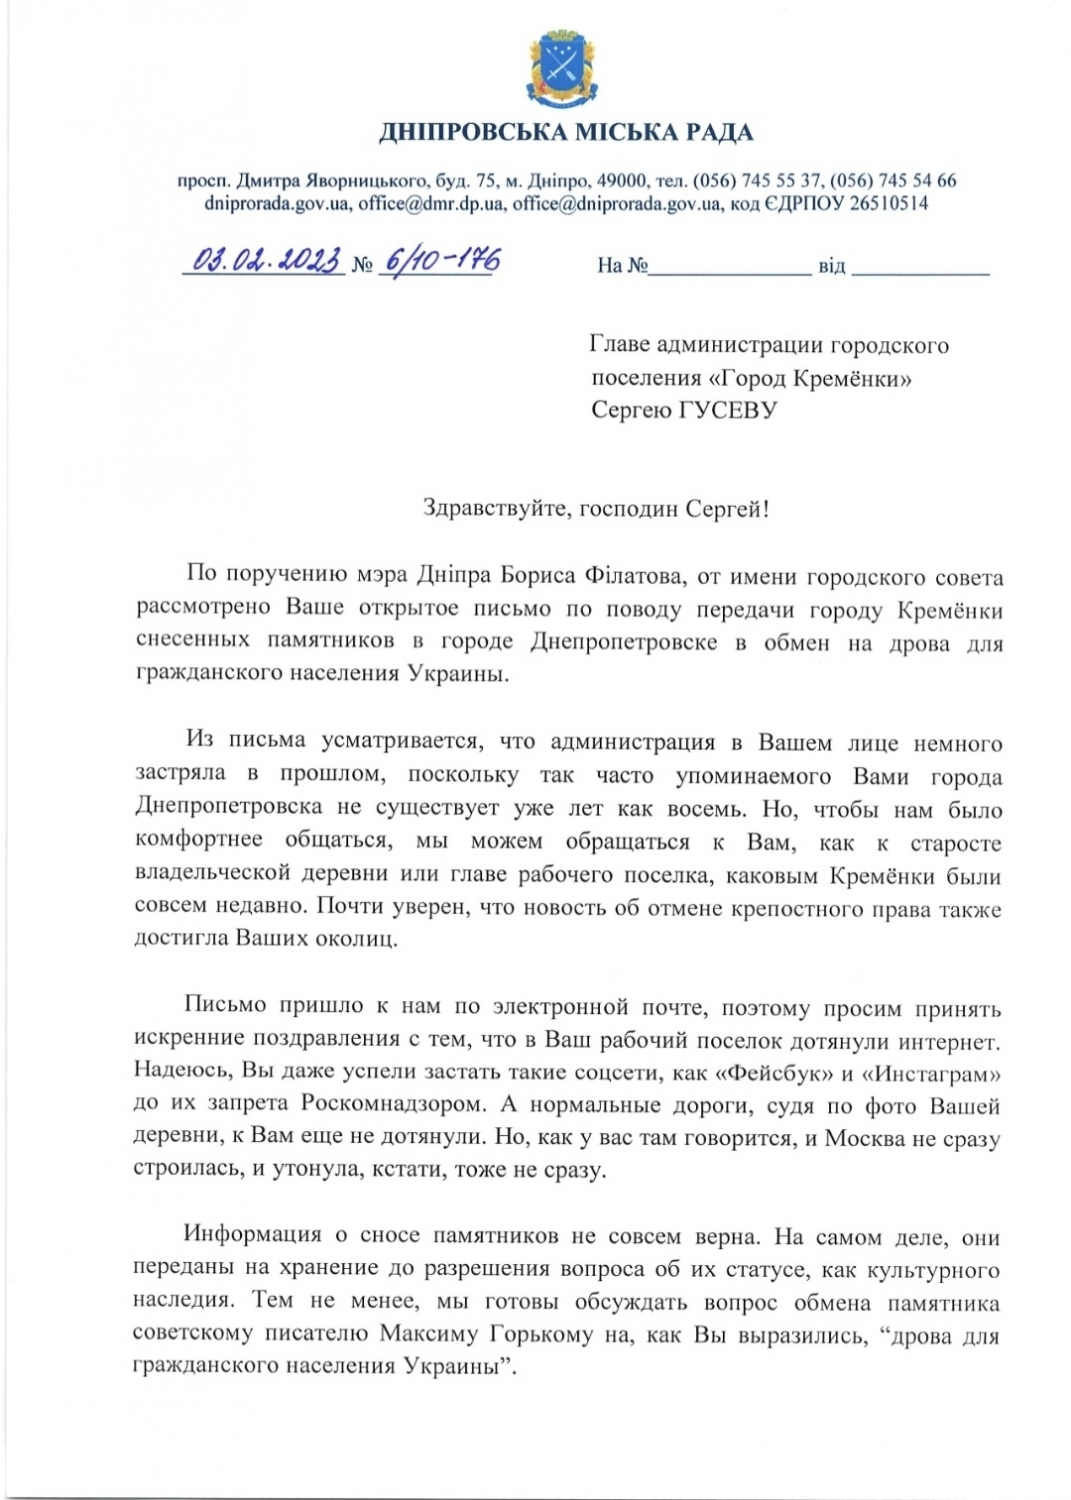 Глава Кремёнок предложил мэру Днепропетровска обменять снесенные памятники на дрова